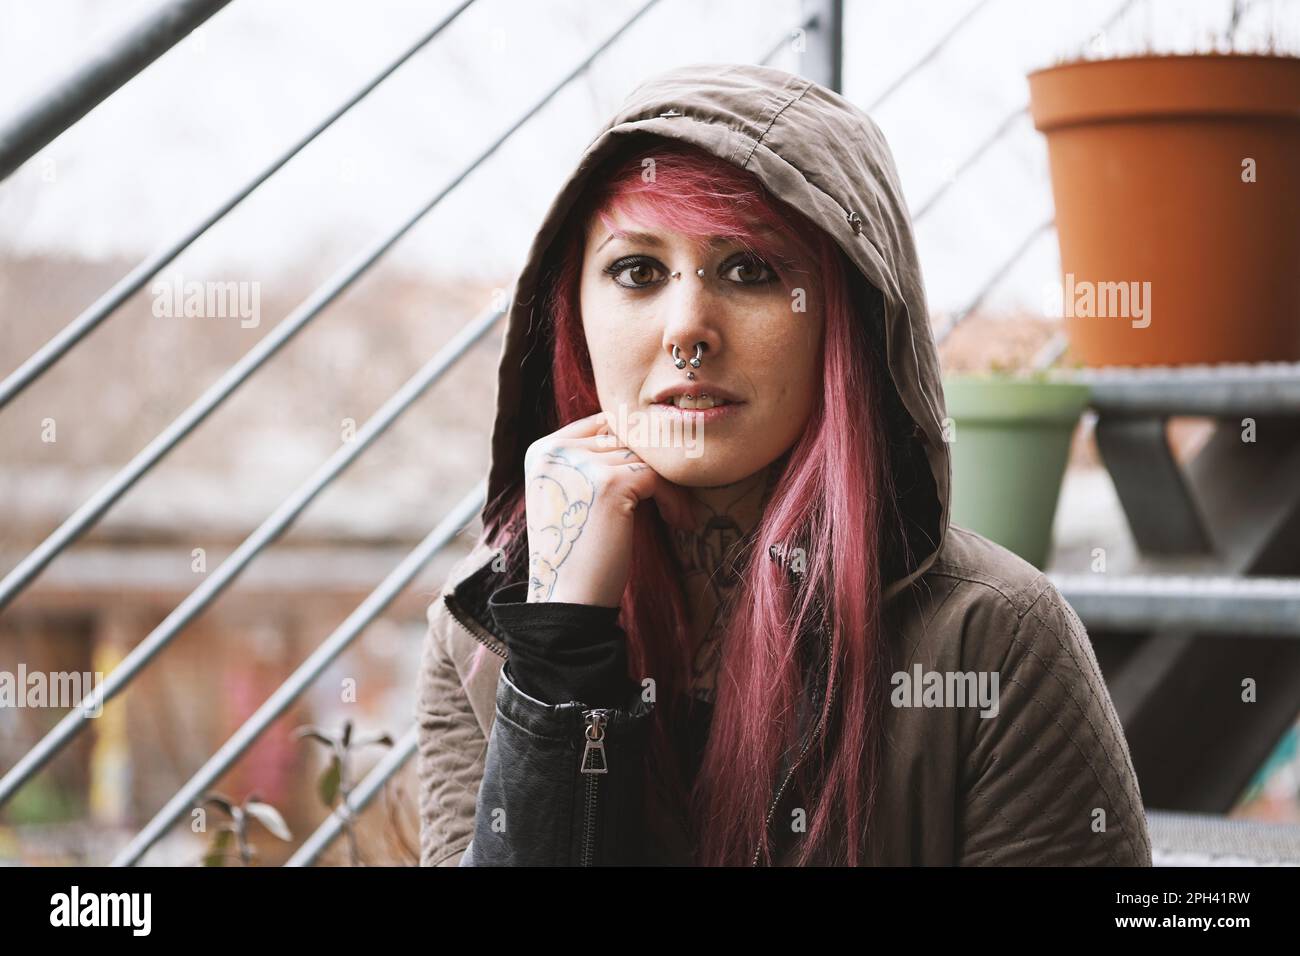 Porträt einer nachdenklichen jungen Frau mit Piercings und Tattoos auf der Außentreppe Stockfoto